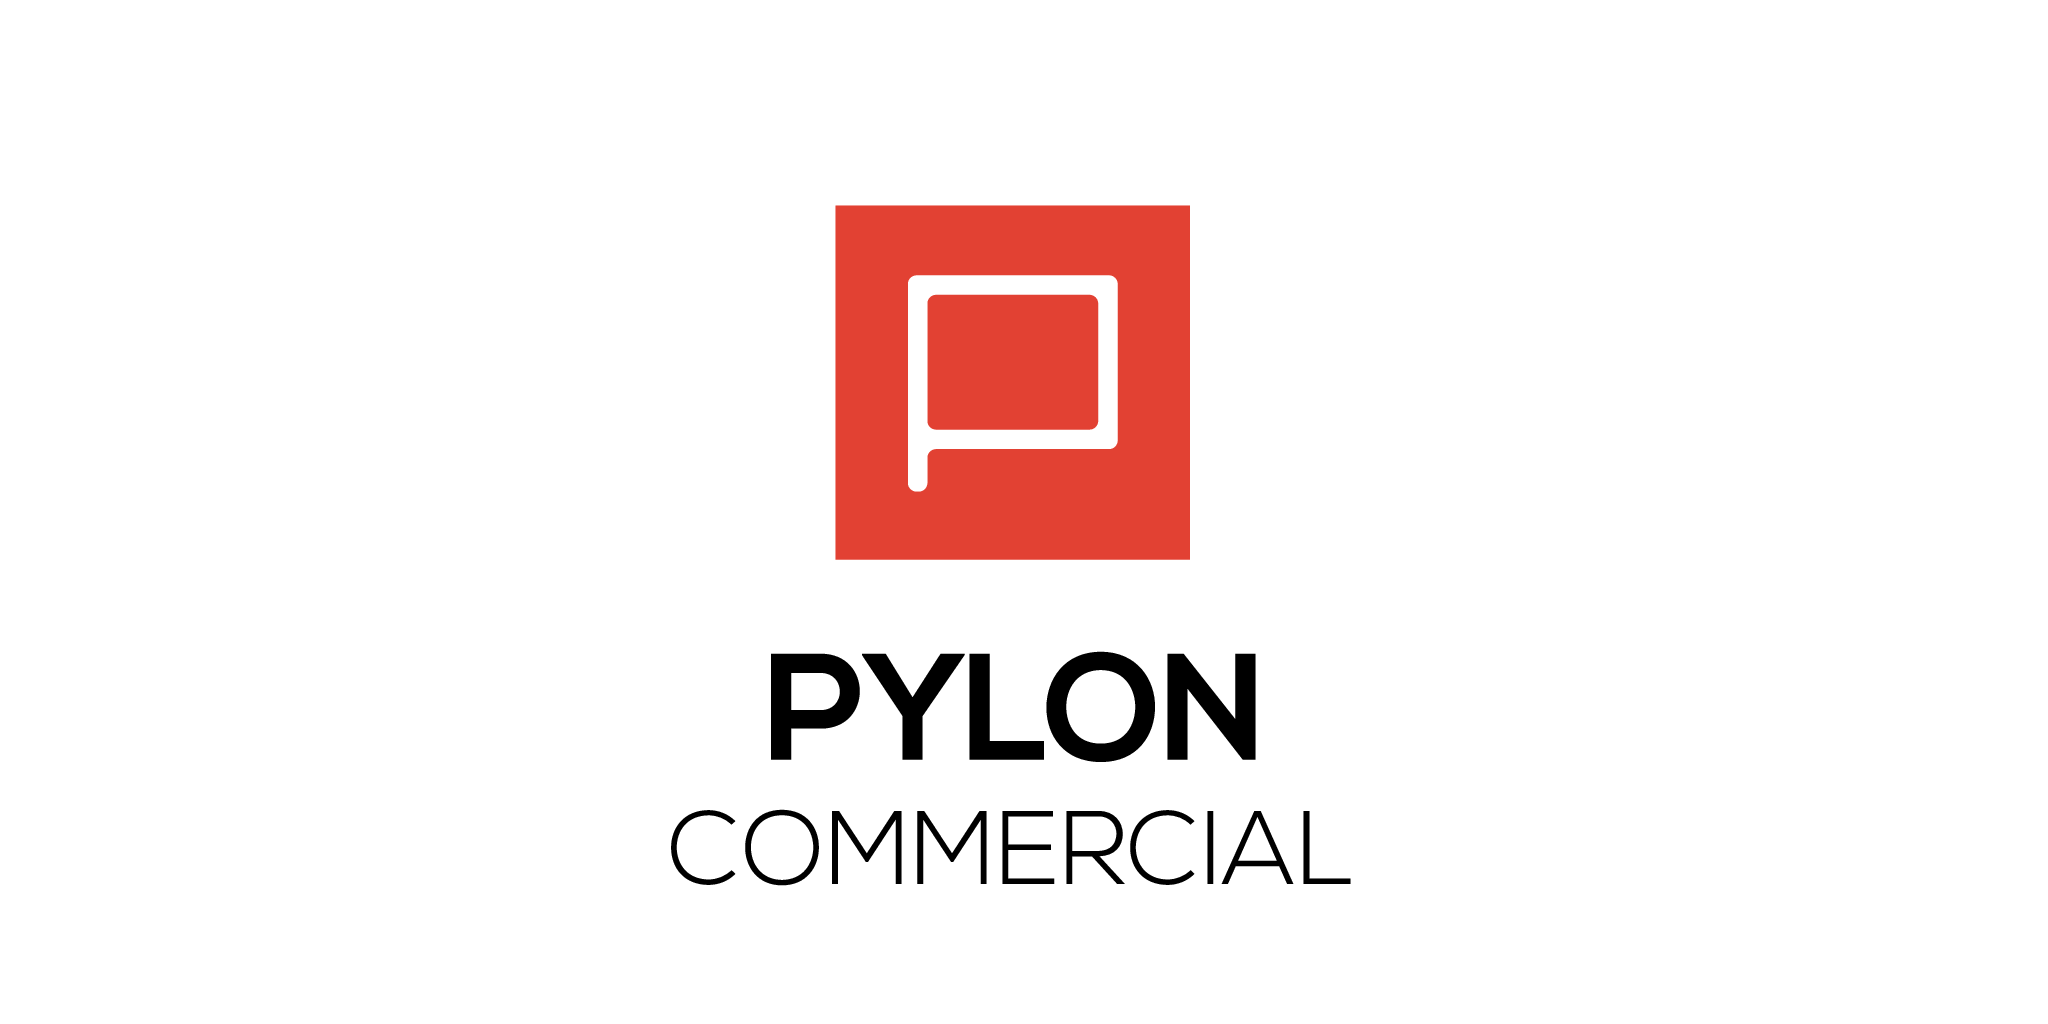 PYLON COMMERCIAL